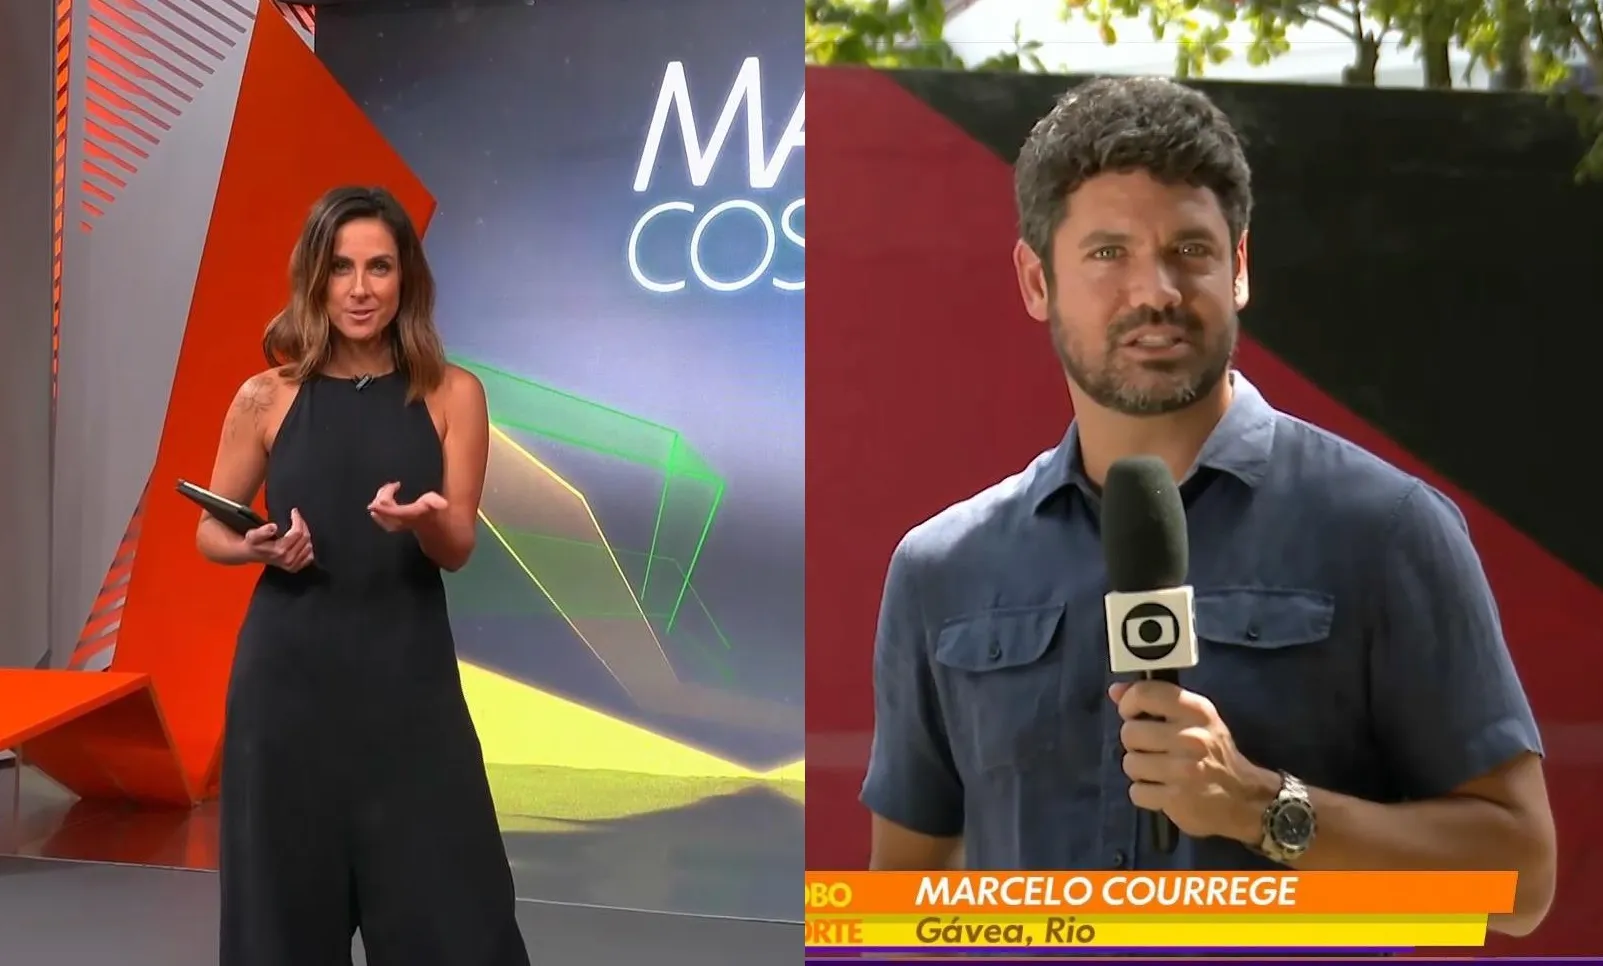 Carol Barcellos e Marcelo Courrege durante participação no programa do Globo Esporte desta quarta-feira